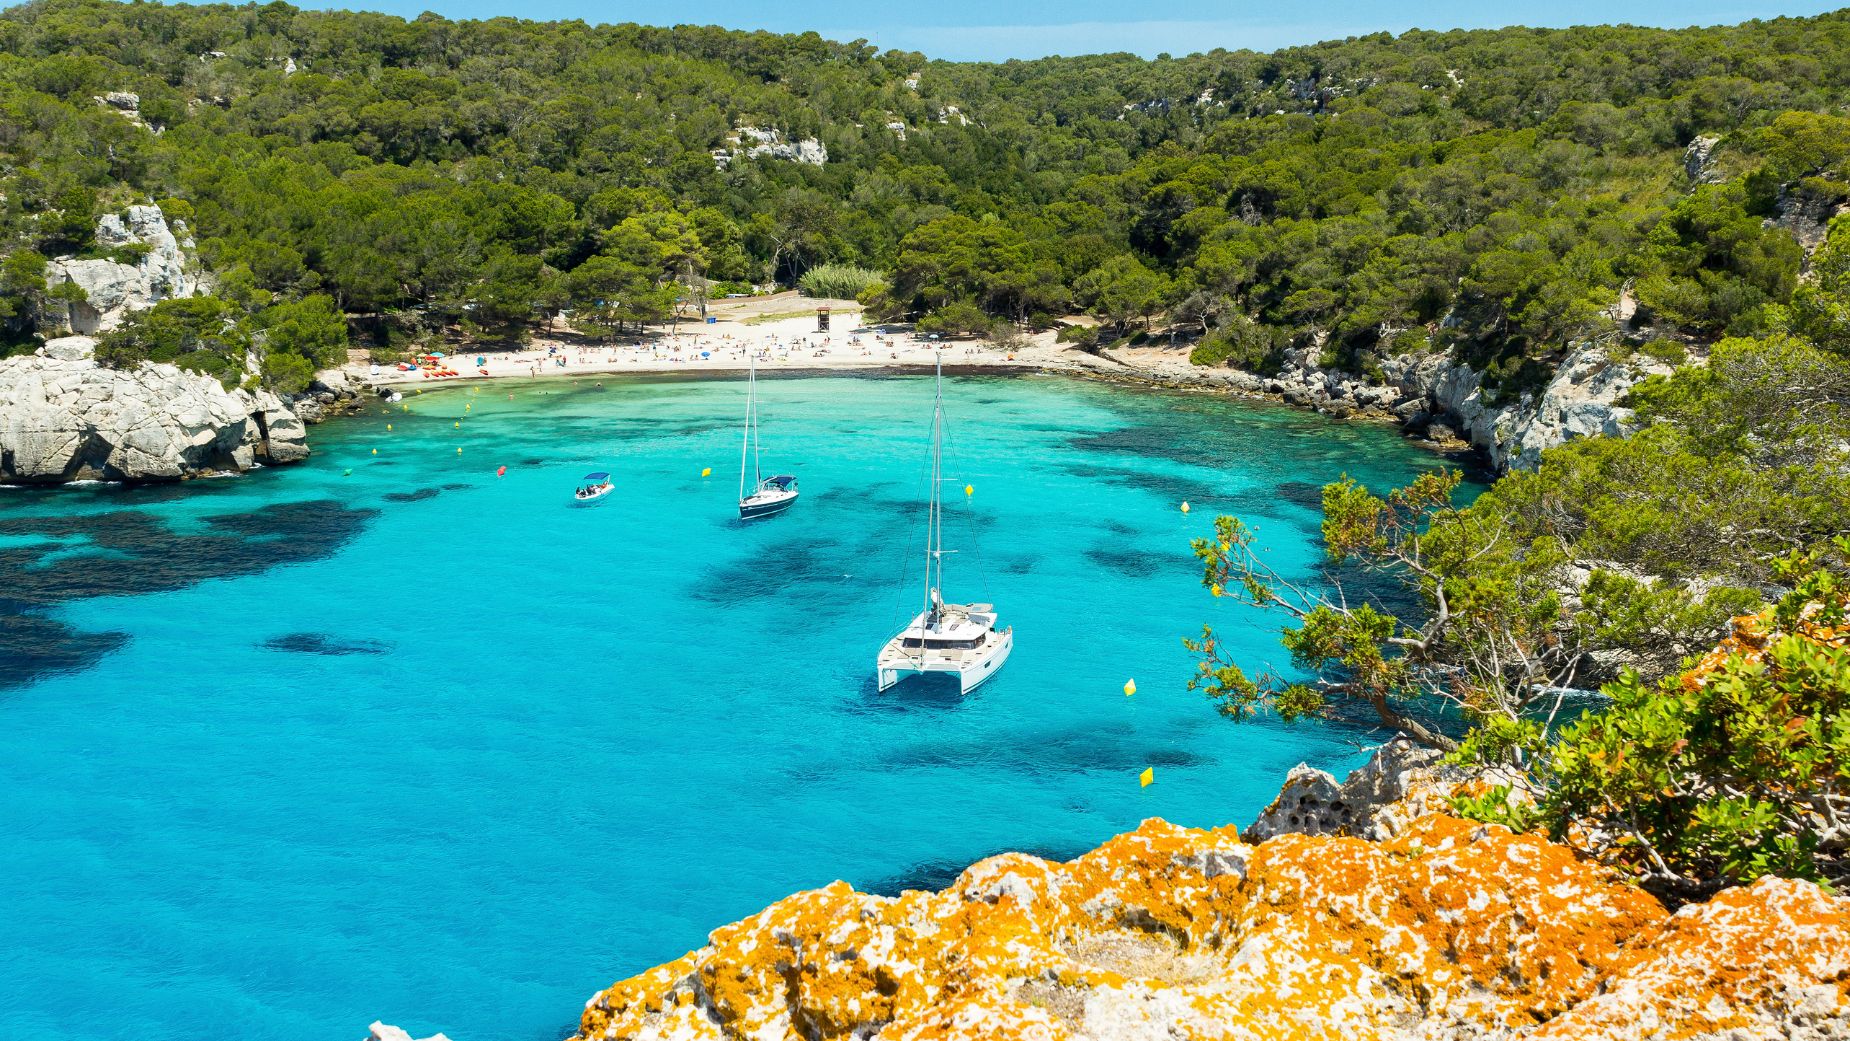 Viajes El Corte Inglés lanza un viaje a precio reducido para visitar MenorcaViajes El Corte Inglés lanza un viaje a precio reducido para visitar Menorca